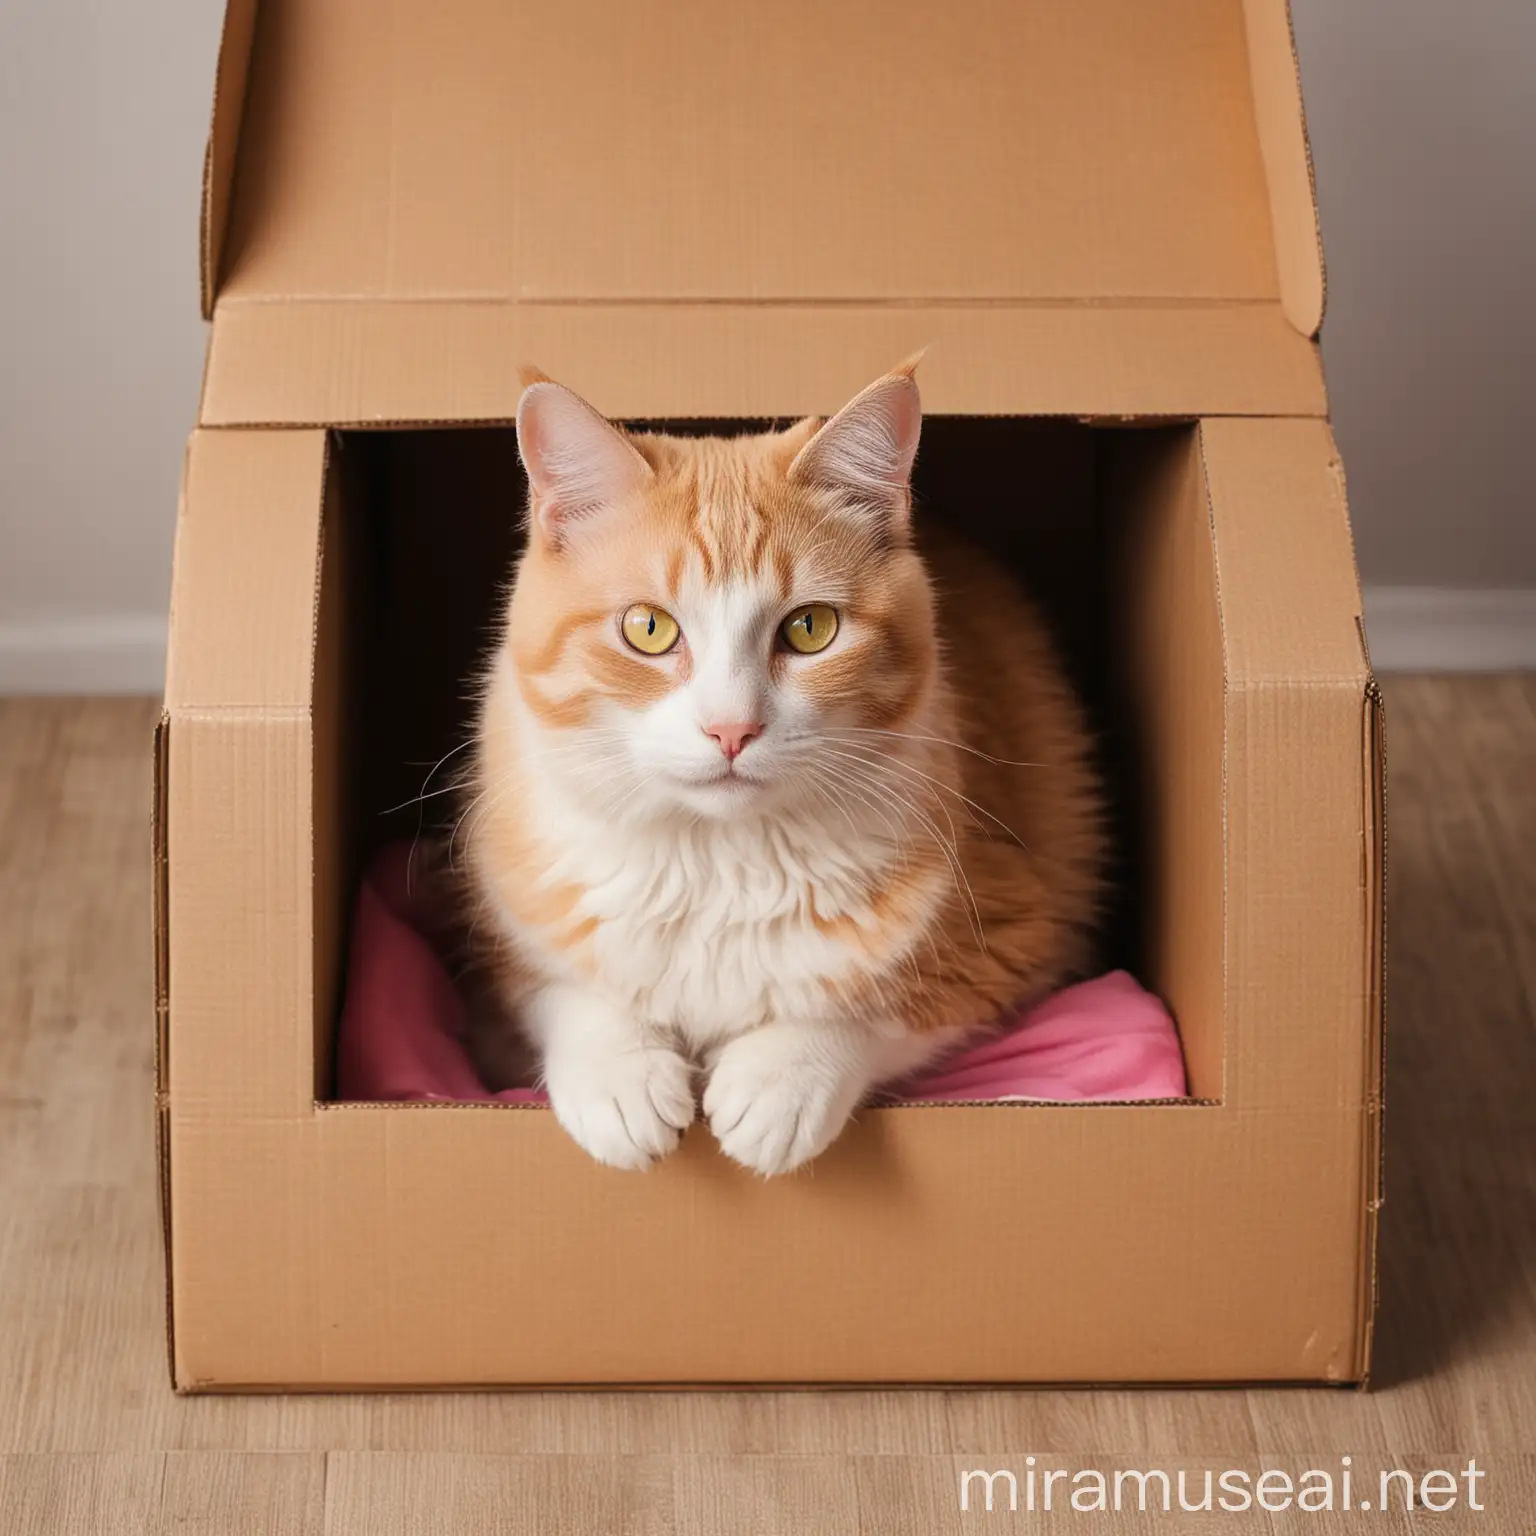 Кот сидит в картонной коробке. Розовые и желтые тона